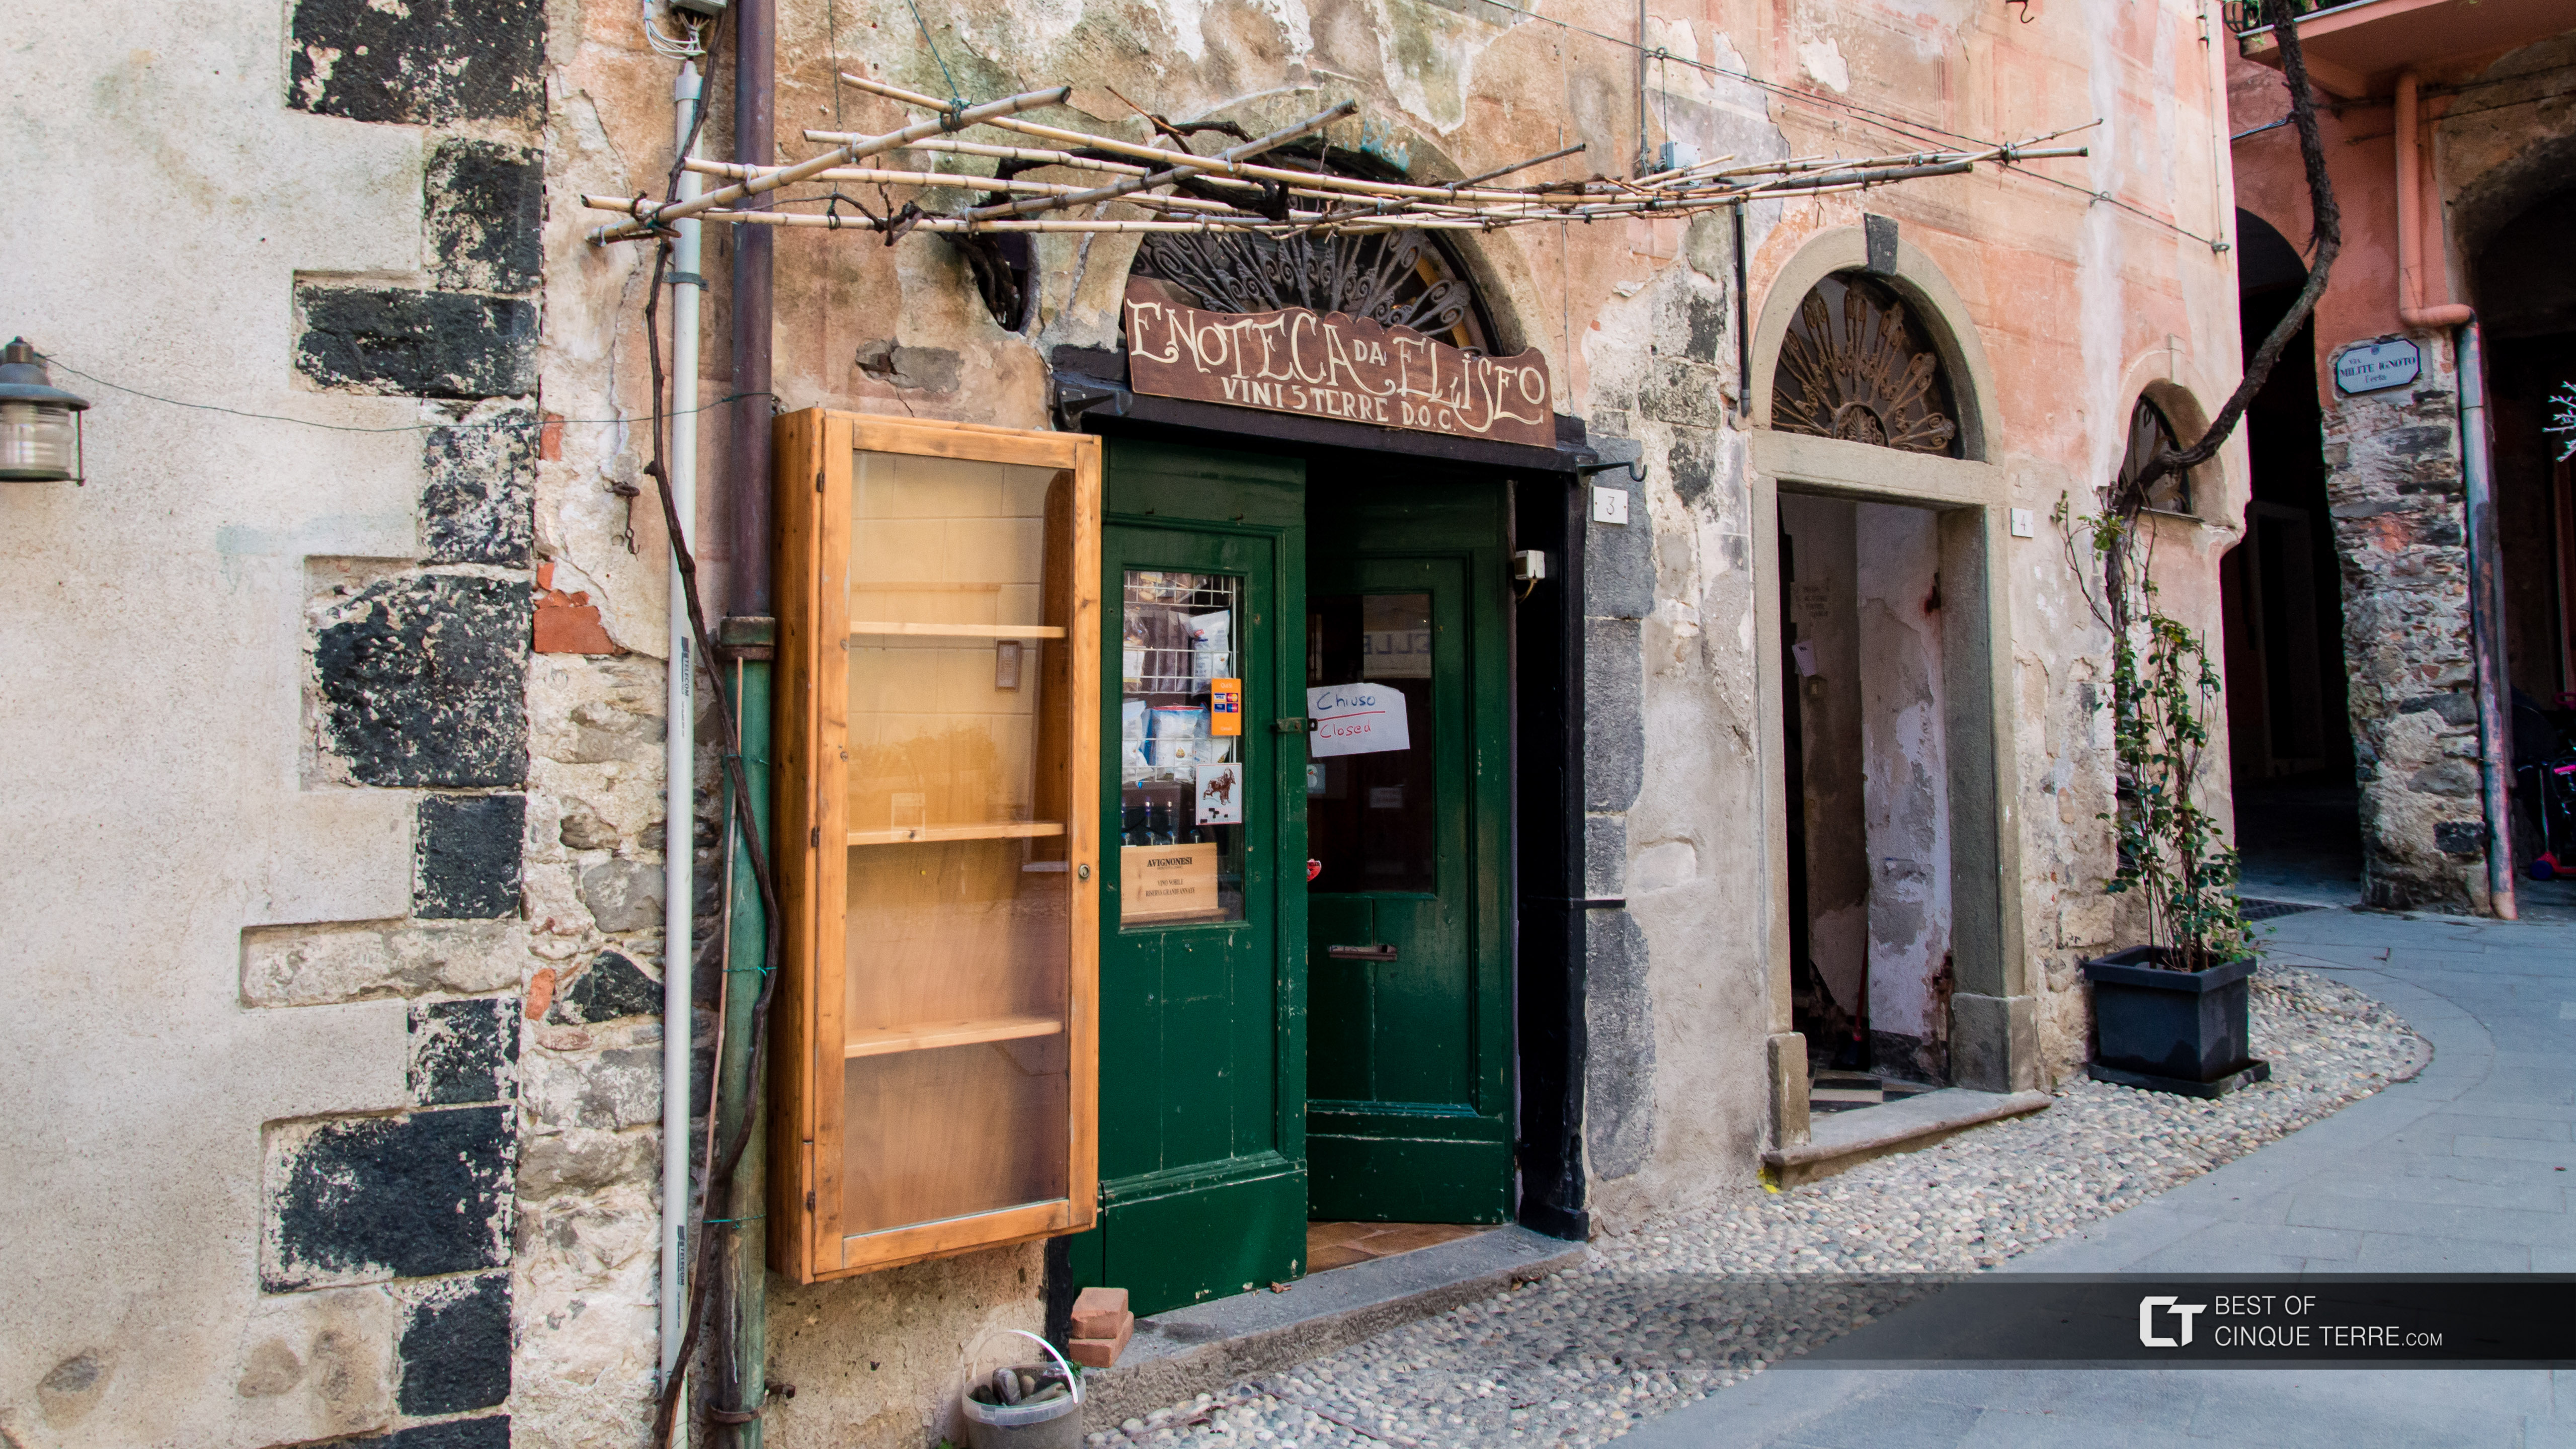 Enoteca da Eliseo, Monterosso al Mare, Cinque Terre, Italia